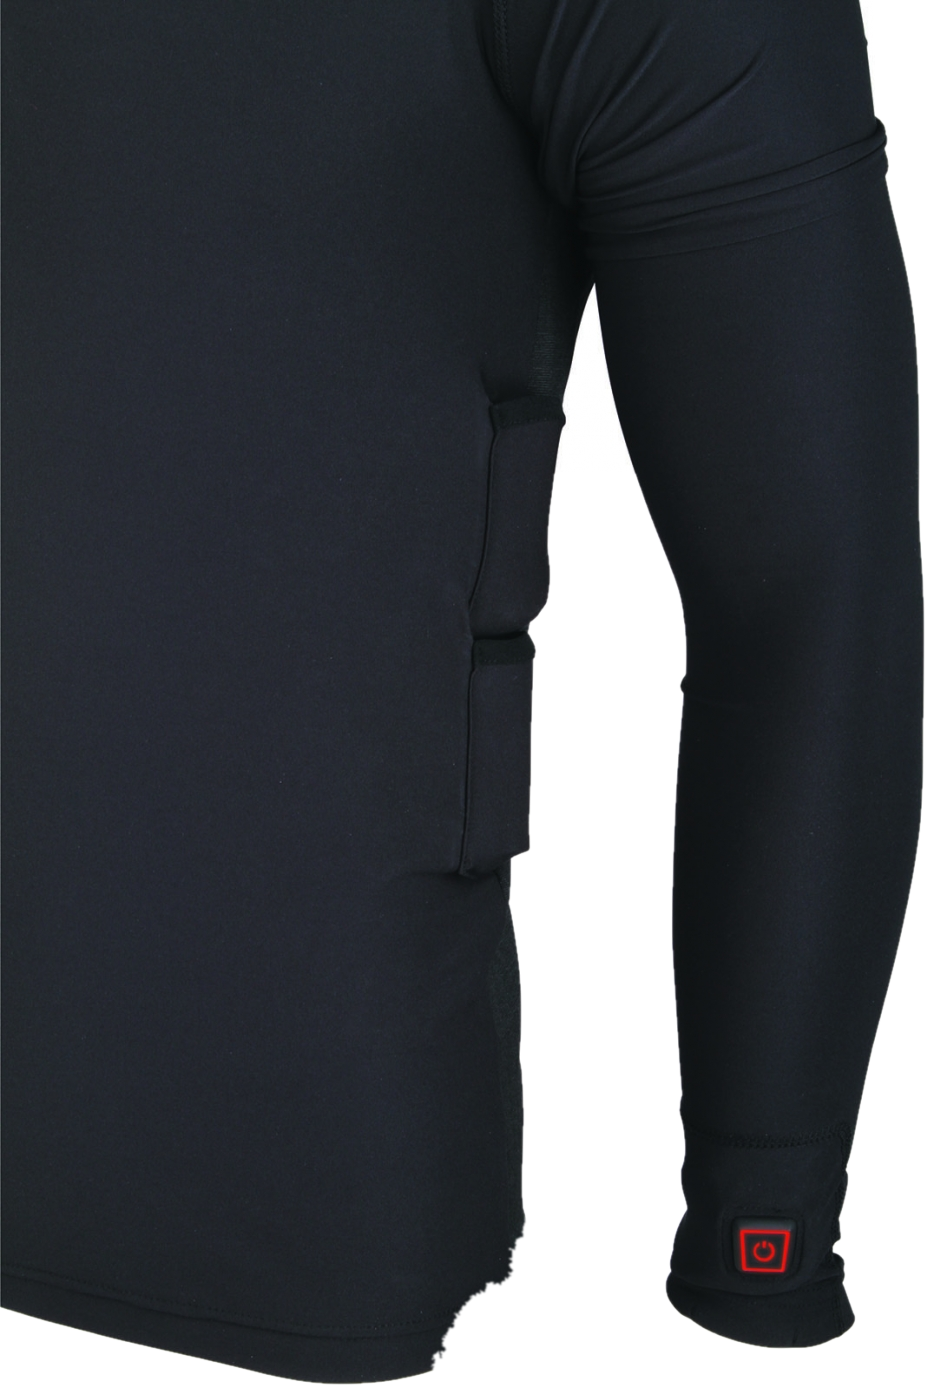 Thermo Underwear - Pants - beheizbare Unterziehhose - Größe XL-XXL (EU  Damen 46-48, EU Herren 54-58)